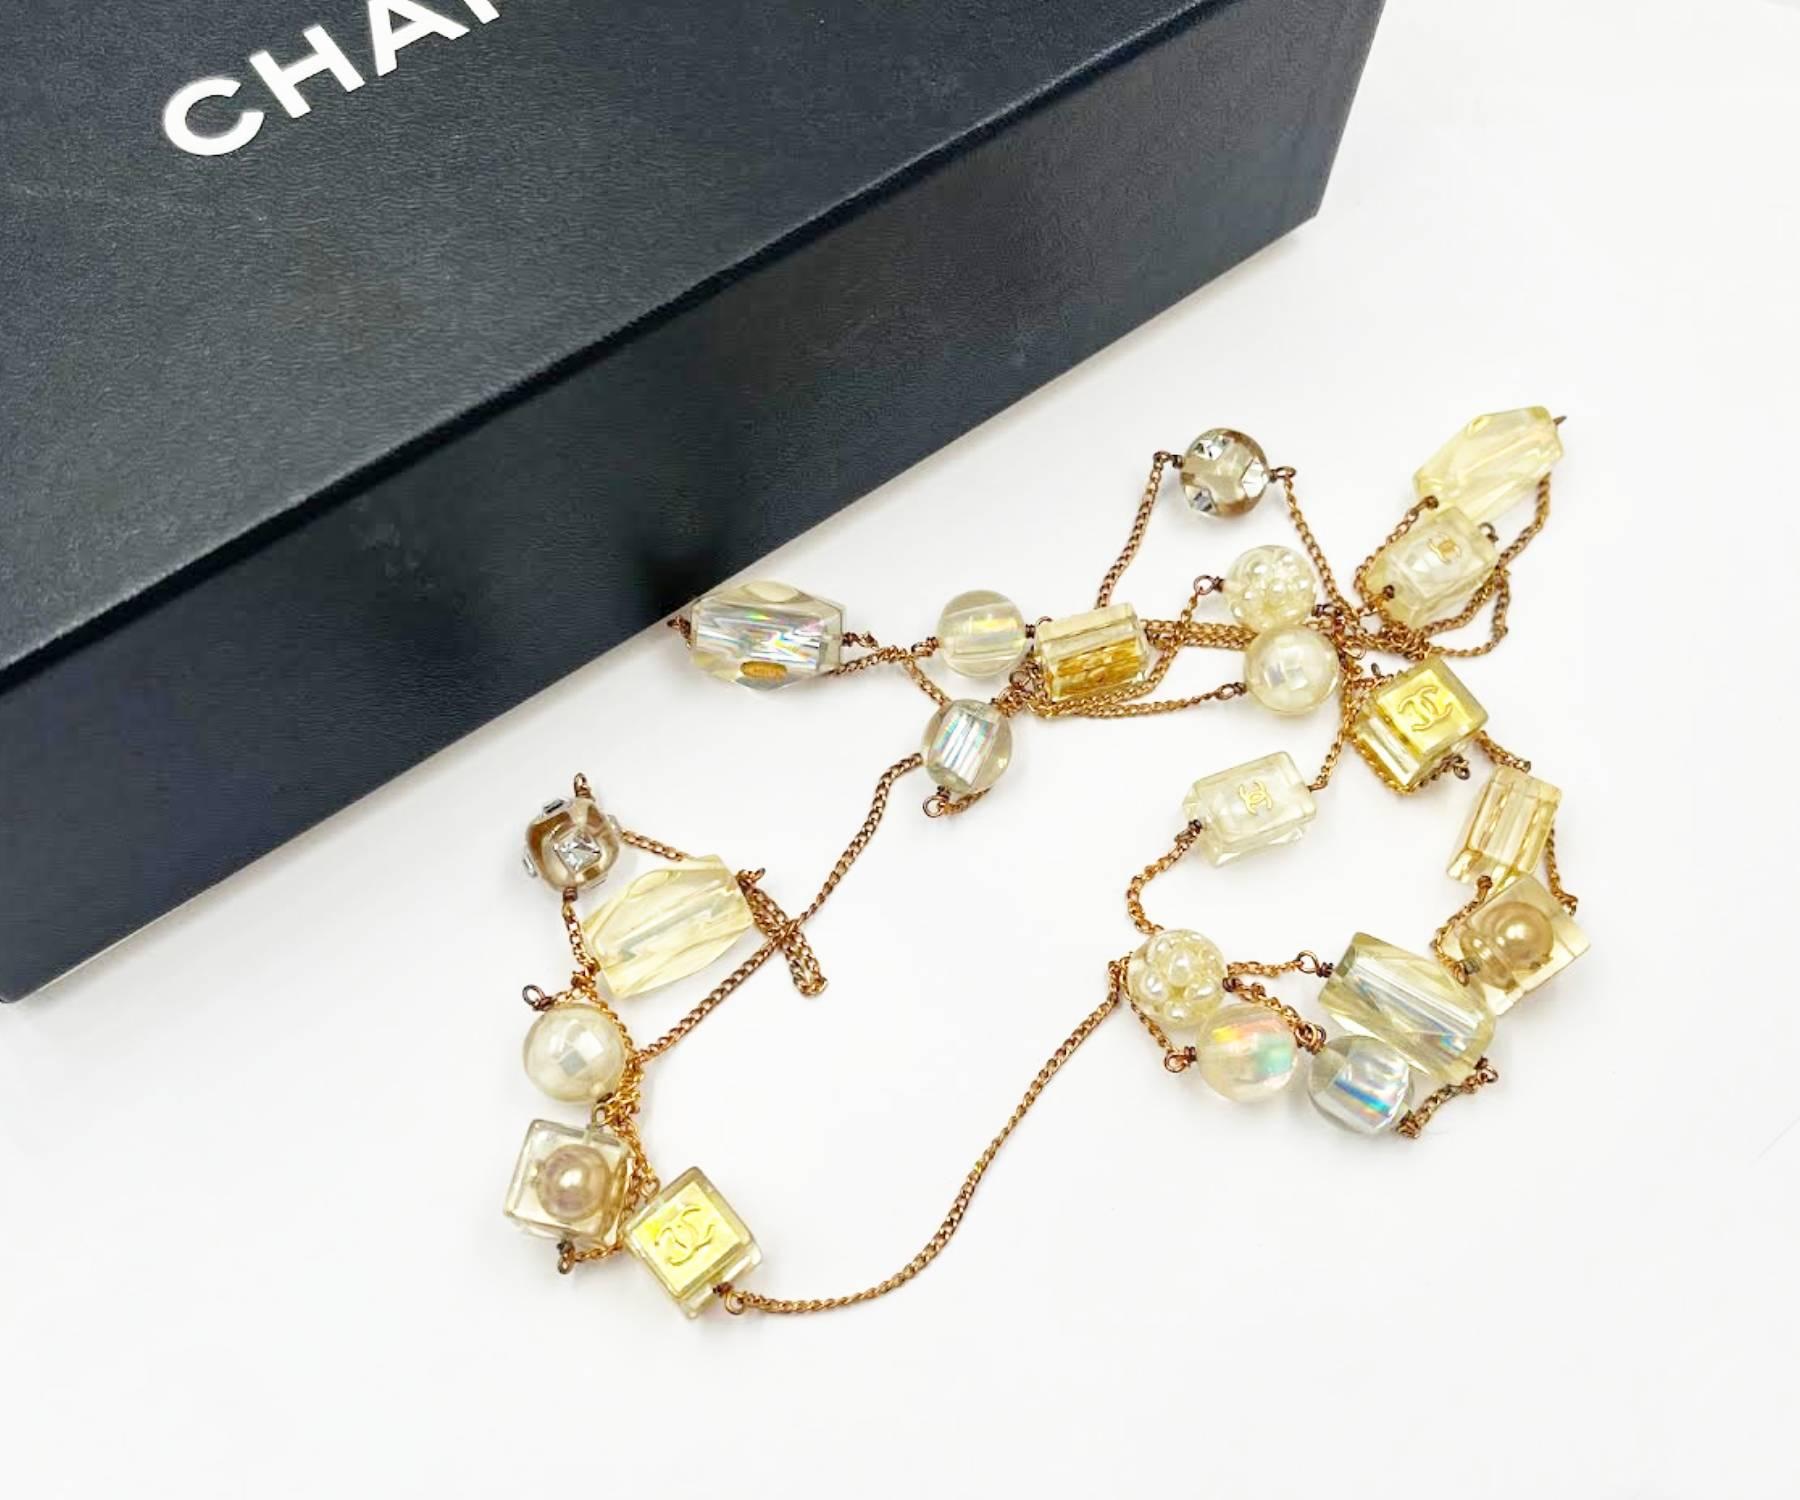 Chanel Vintage Gold plattiert CC Harz Würfel Perle Super lange Halskette

* Markiert 97
*Hergestellt in Frankreich
* Kommt mit dem Originalkarton

-Die Kette ist ca. 66″ lang.
-Die größten Perlen sind etwa 0,9″ x 0,75″ groß.
-sehr glänzend und